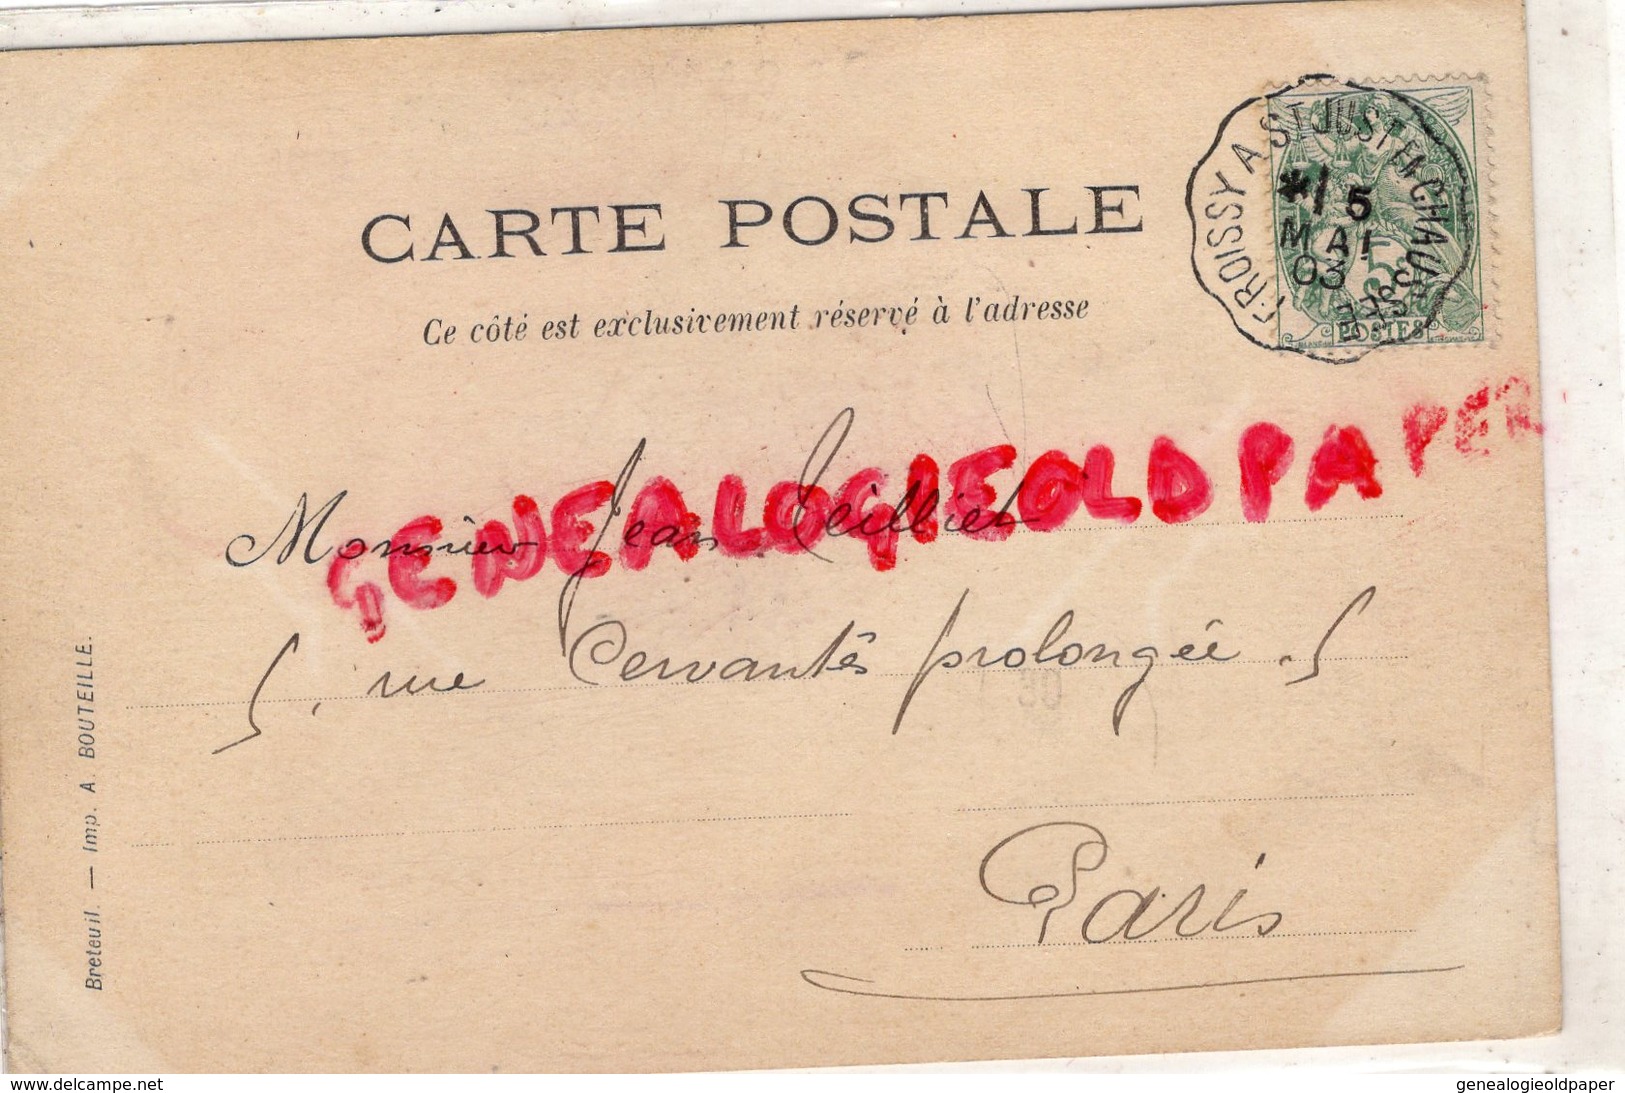 60- FROISSY - GRANDE RUE - ECRITE A JEAN TEILLIET PEINTRE -5 RUE CERVANTES PROLONGEE PARIS- ST SAINT JUNIEN 1903 - Froissy